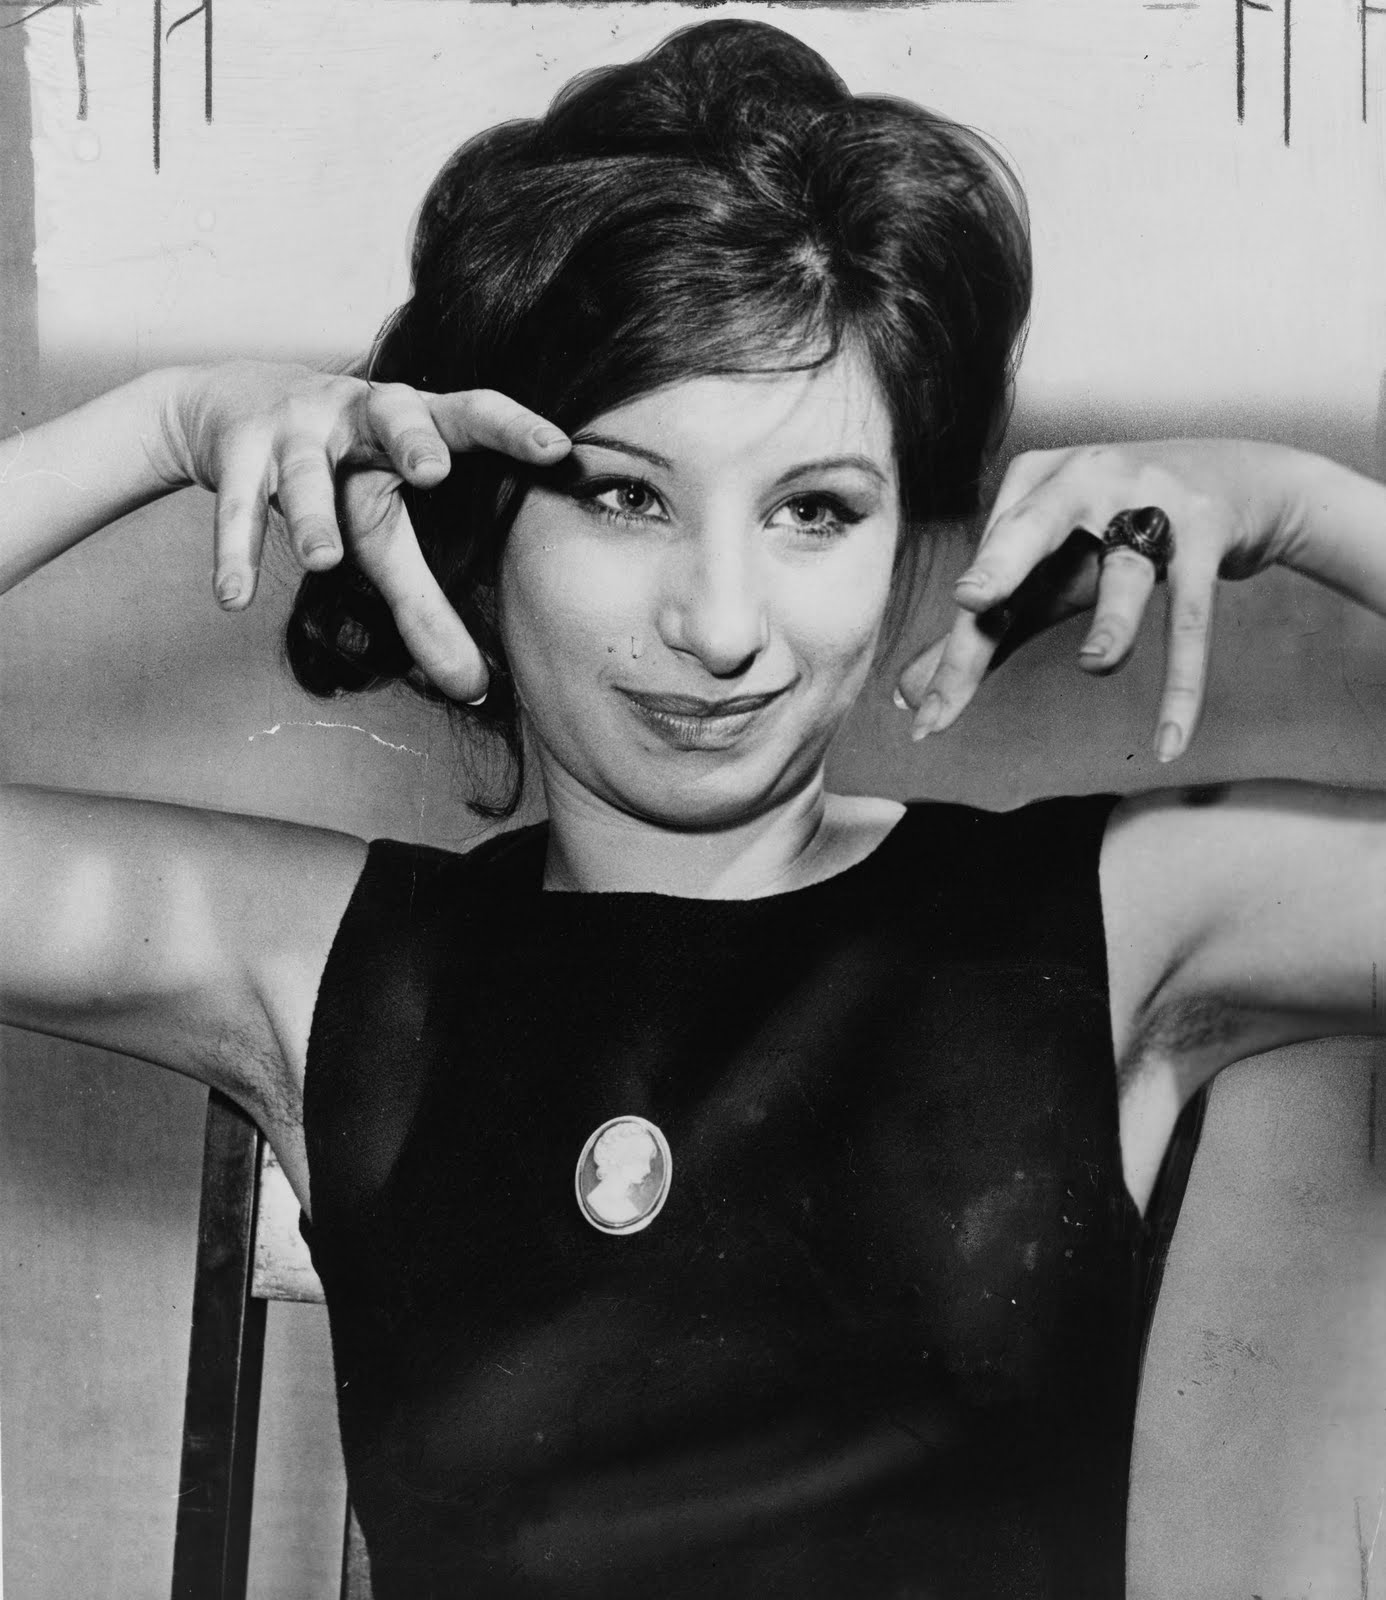 http://3.bp.blogspot.com/_Nuta_CQvImI/TET_cjACxgI/AAAAAAAACg0/cdzTwp34nYk/s1600/Barbra-Streisand-Funny-Girl-1962.jpg